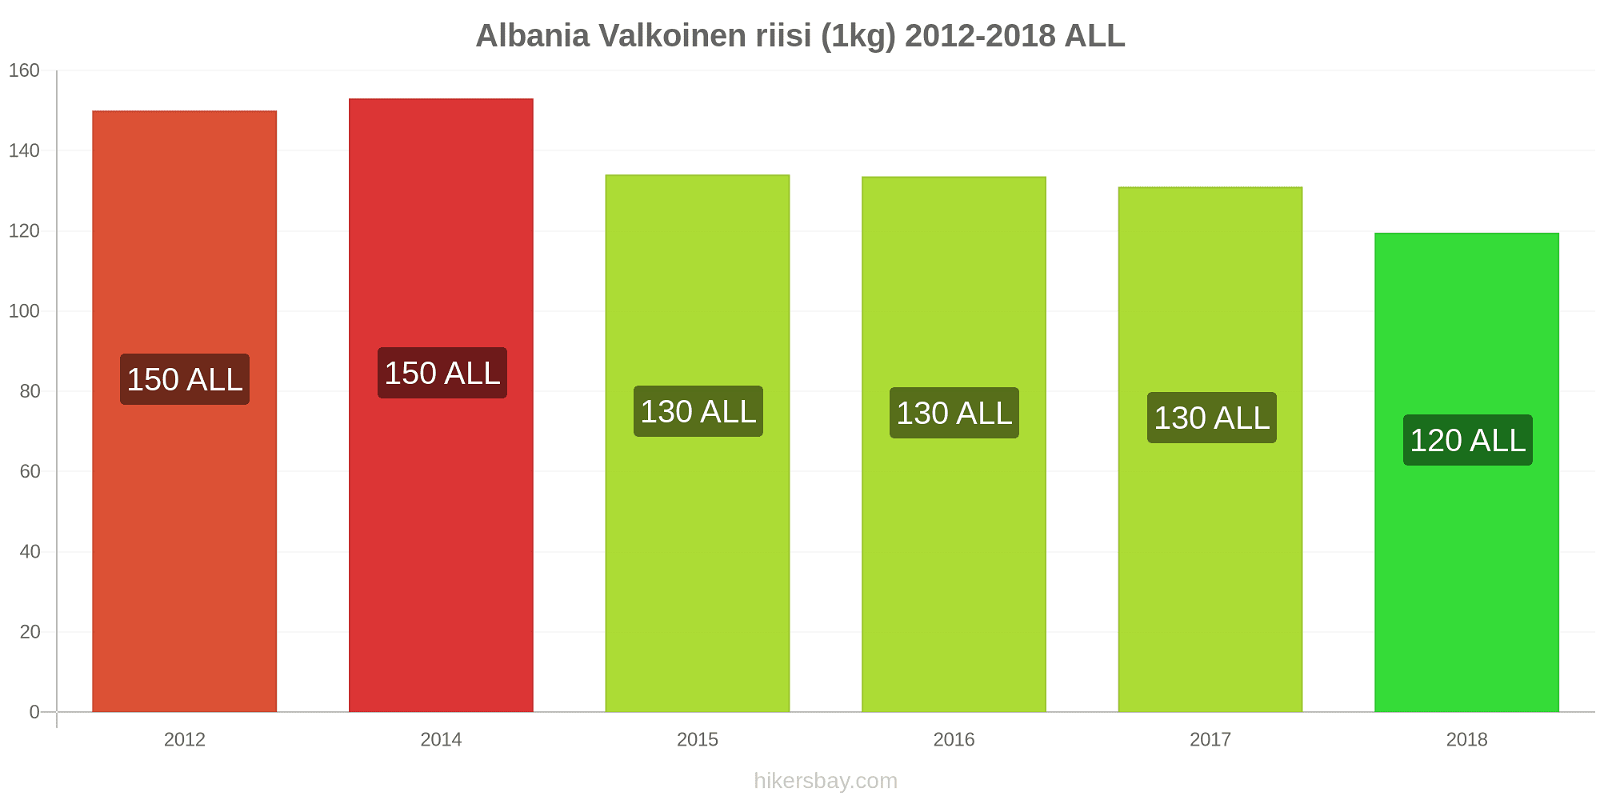 Albania hintojen muutokset Valkoinen riisi (1kg) hikersbay.com